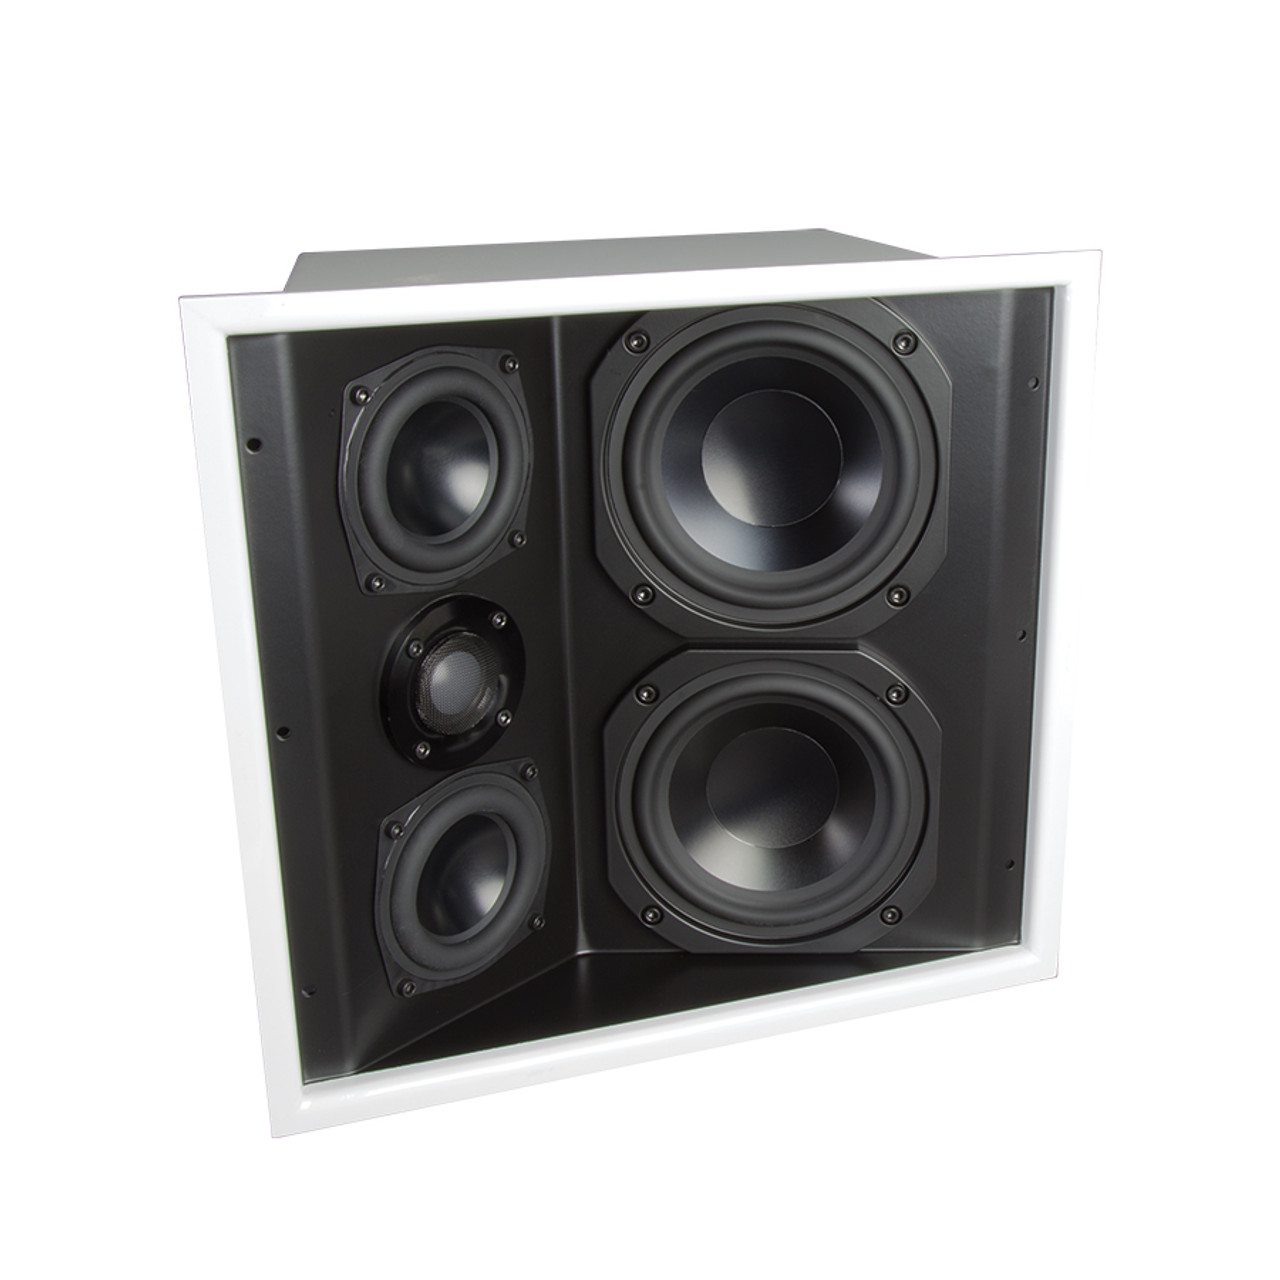 James Loudspeaker FXA550S Dual 5.25" 3-Way Angled In-Ceiling/Surround Loudspeaker (Each)